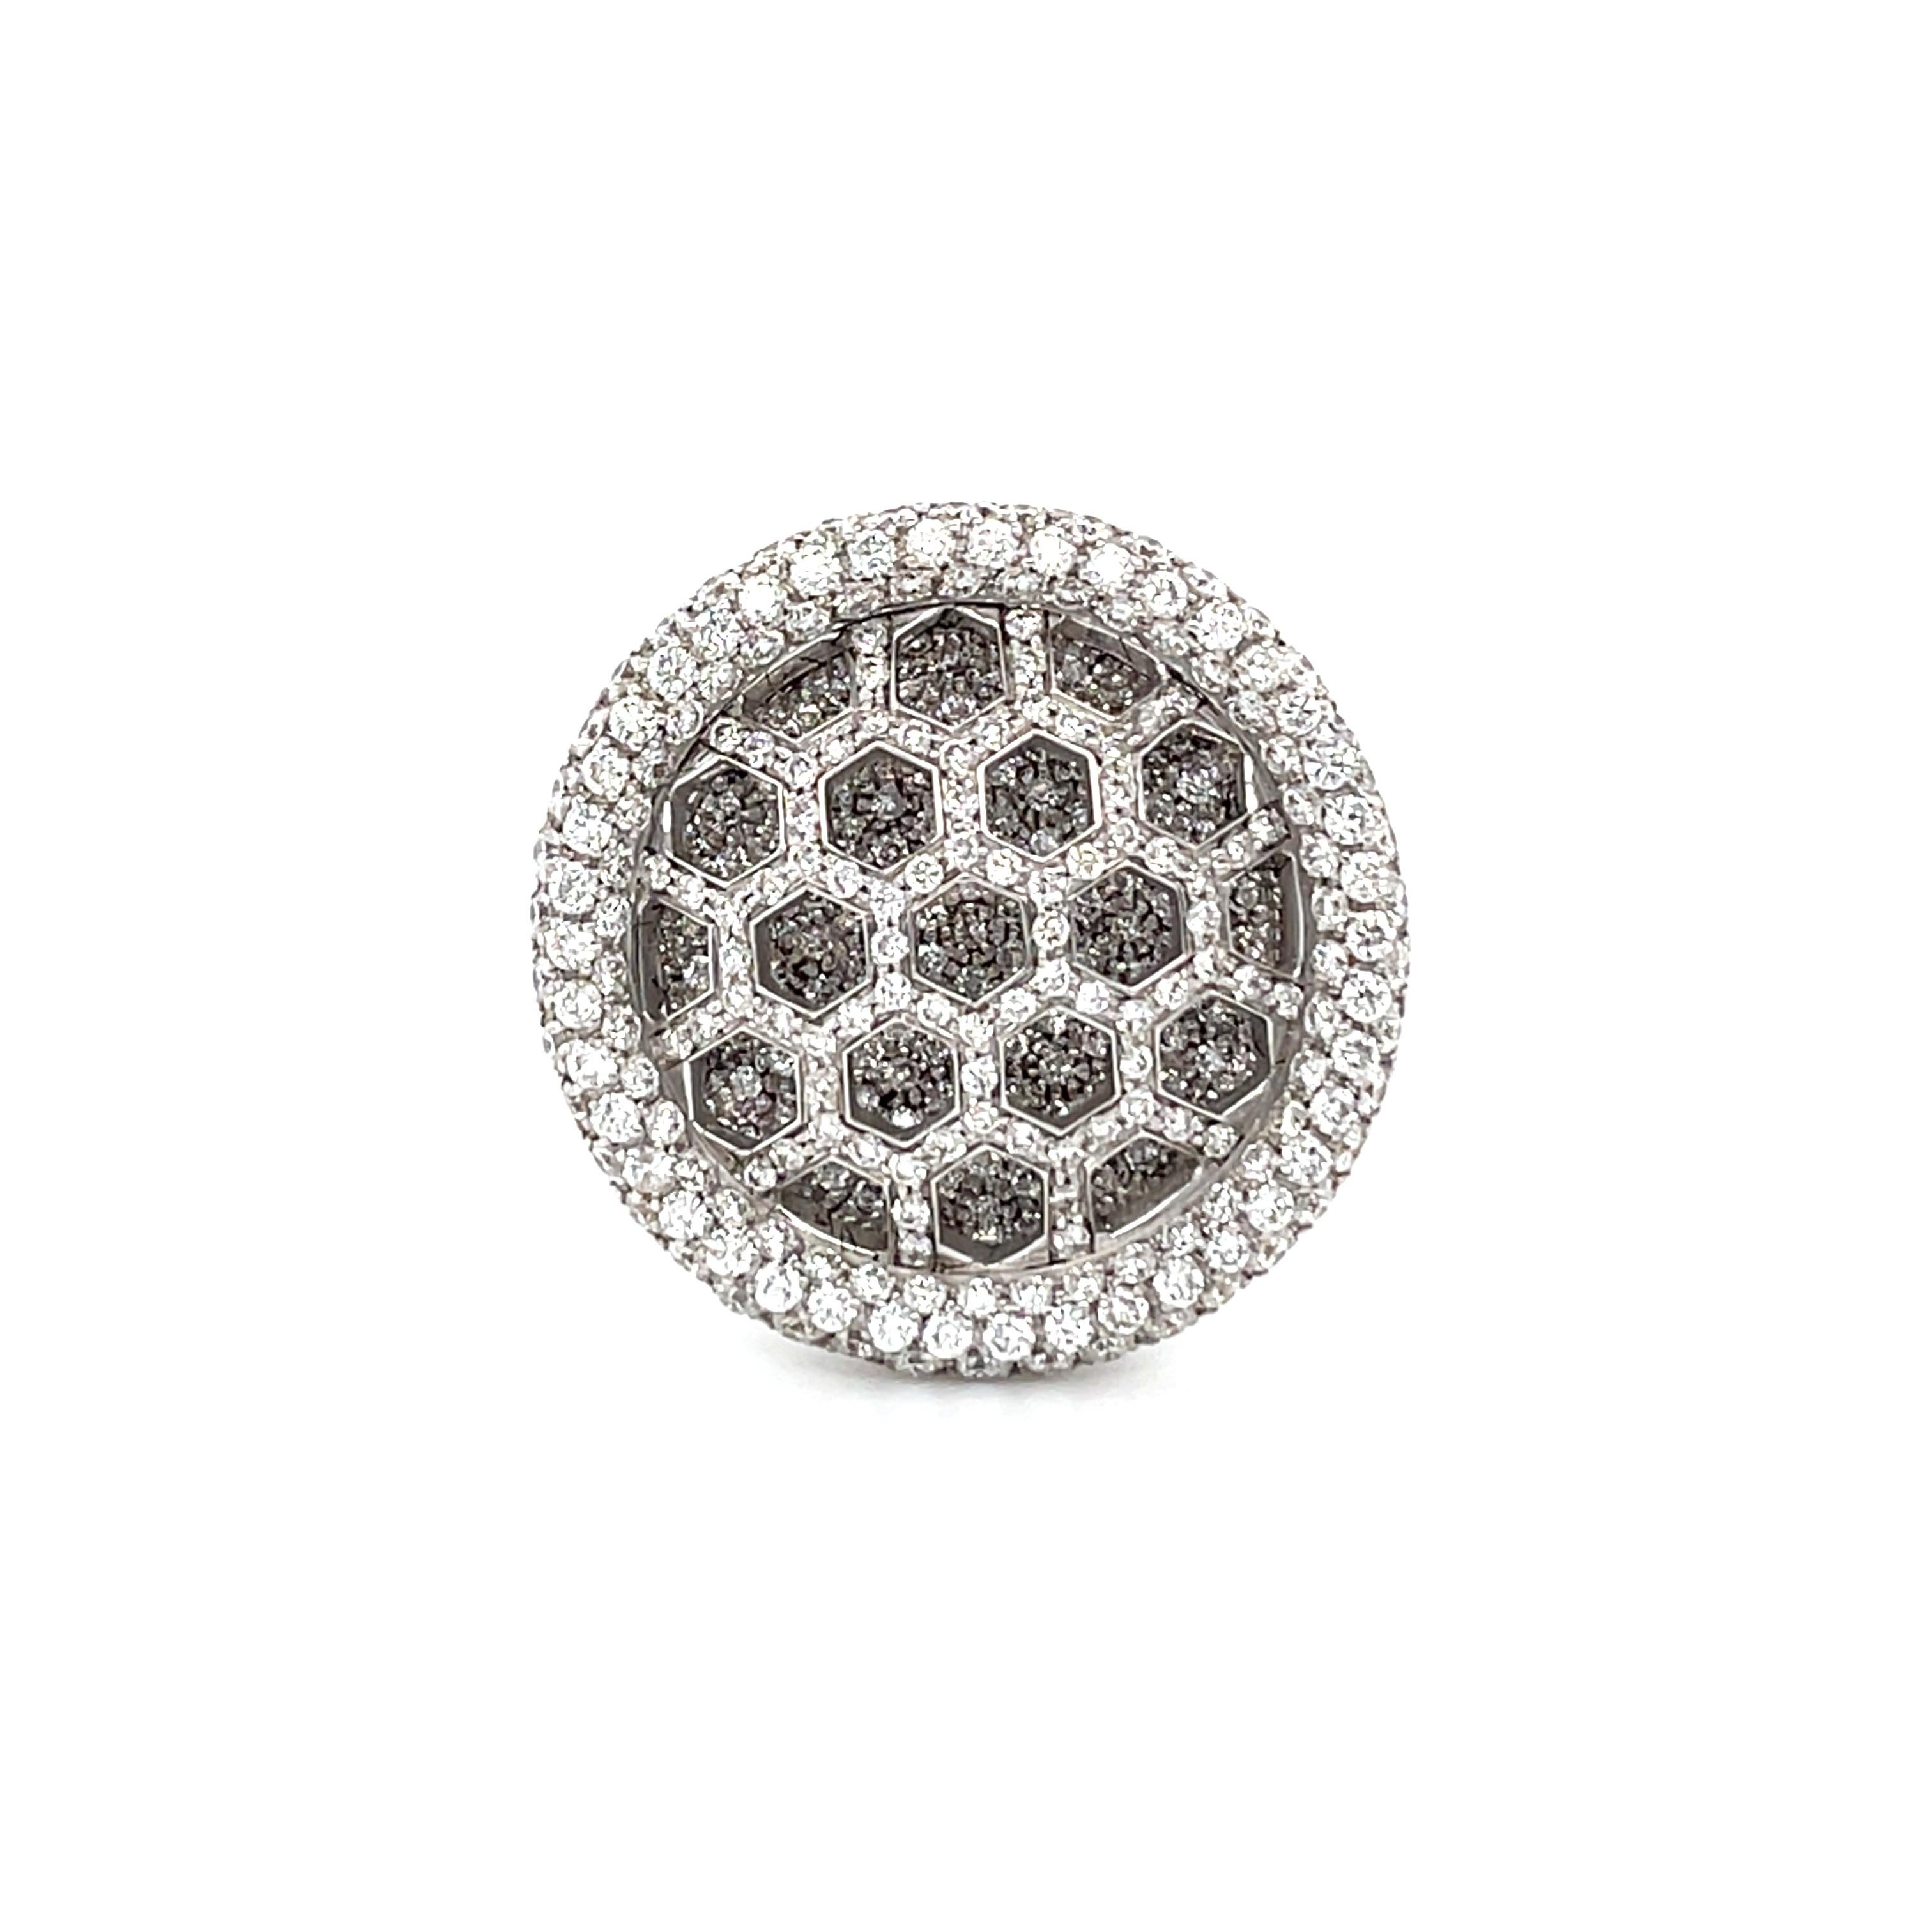 18K Weißgold schönen Cocktail-Ring ist von Dentelle Collection. Dieser elegante Ring hat ein sehr feines Muster mit natürlichen weißen Diamanten von insgesamt 2,42 Karat. Das Gesamtgewicht des Metalls beträgt 10,80 g. Der Durchmesser des oberen